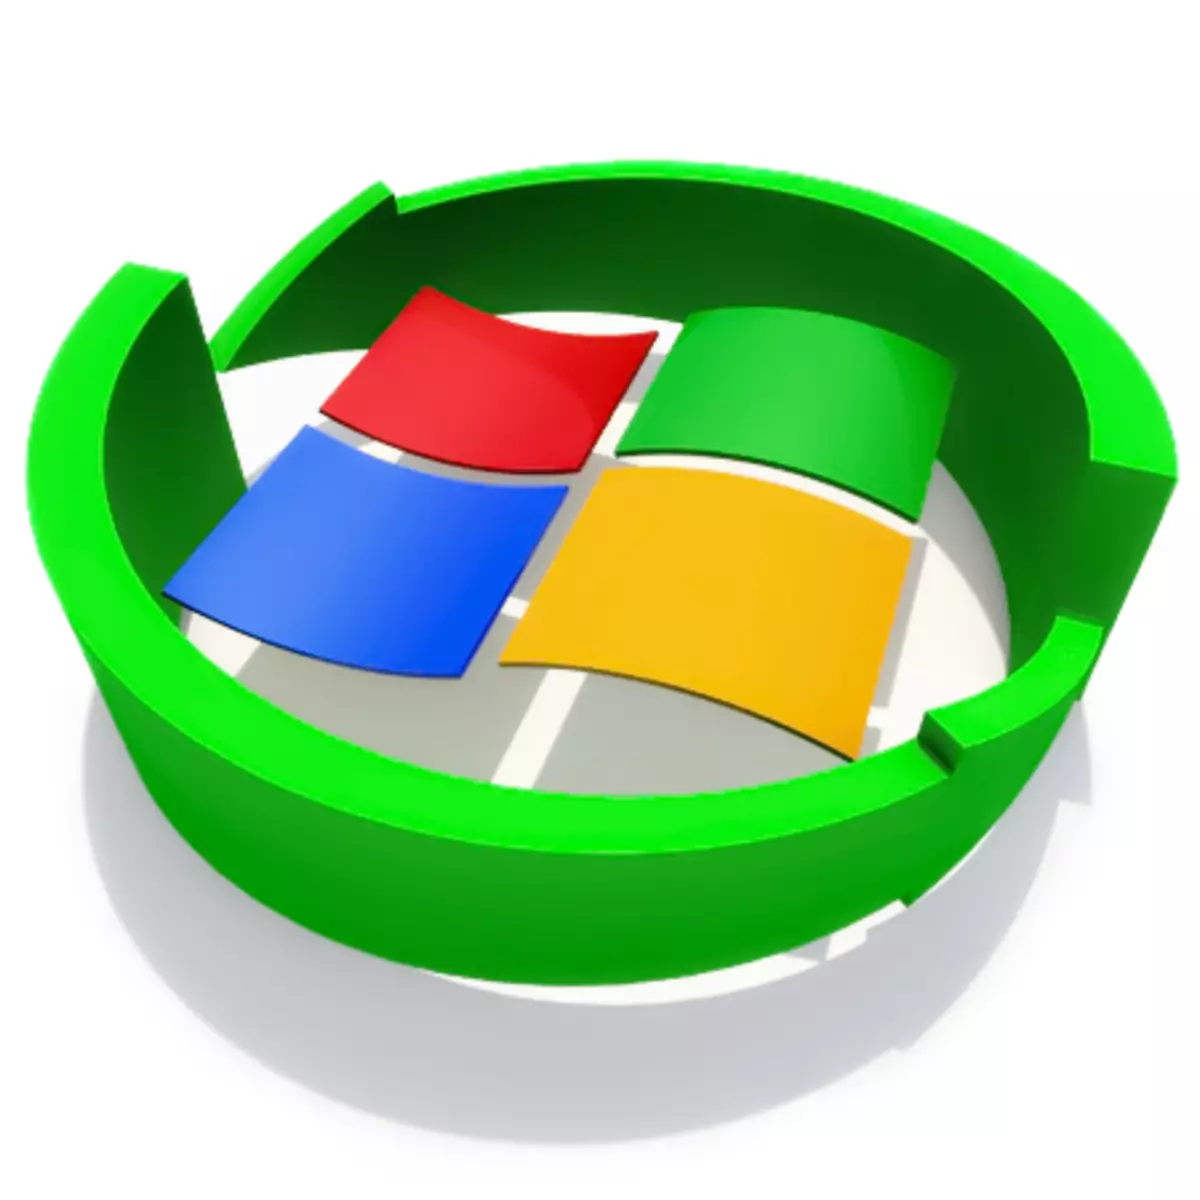 Επαναφορά του συστήματος Windows XP